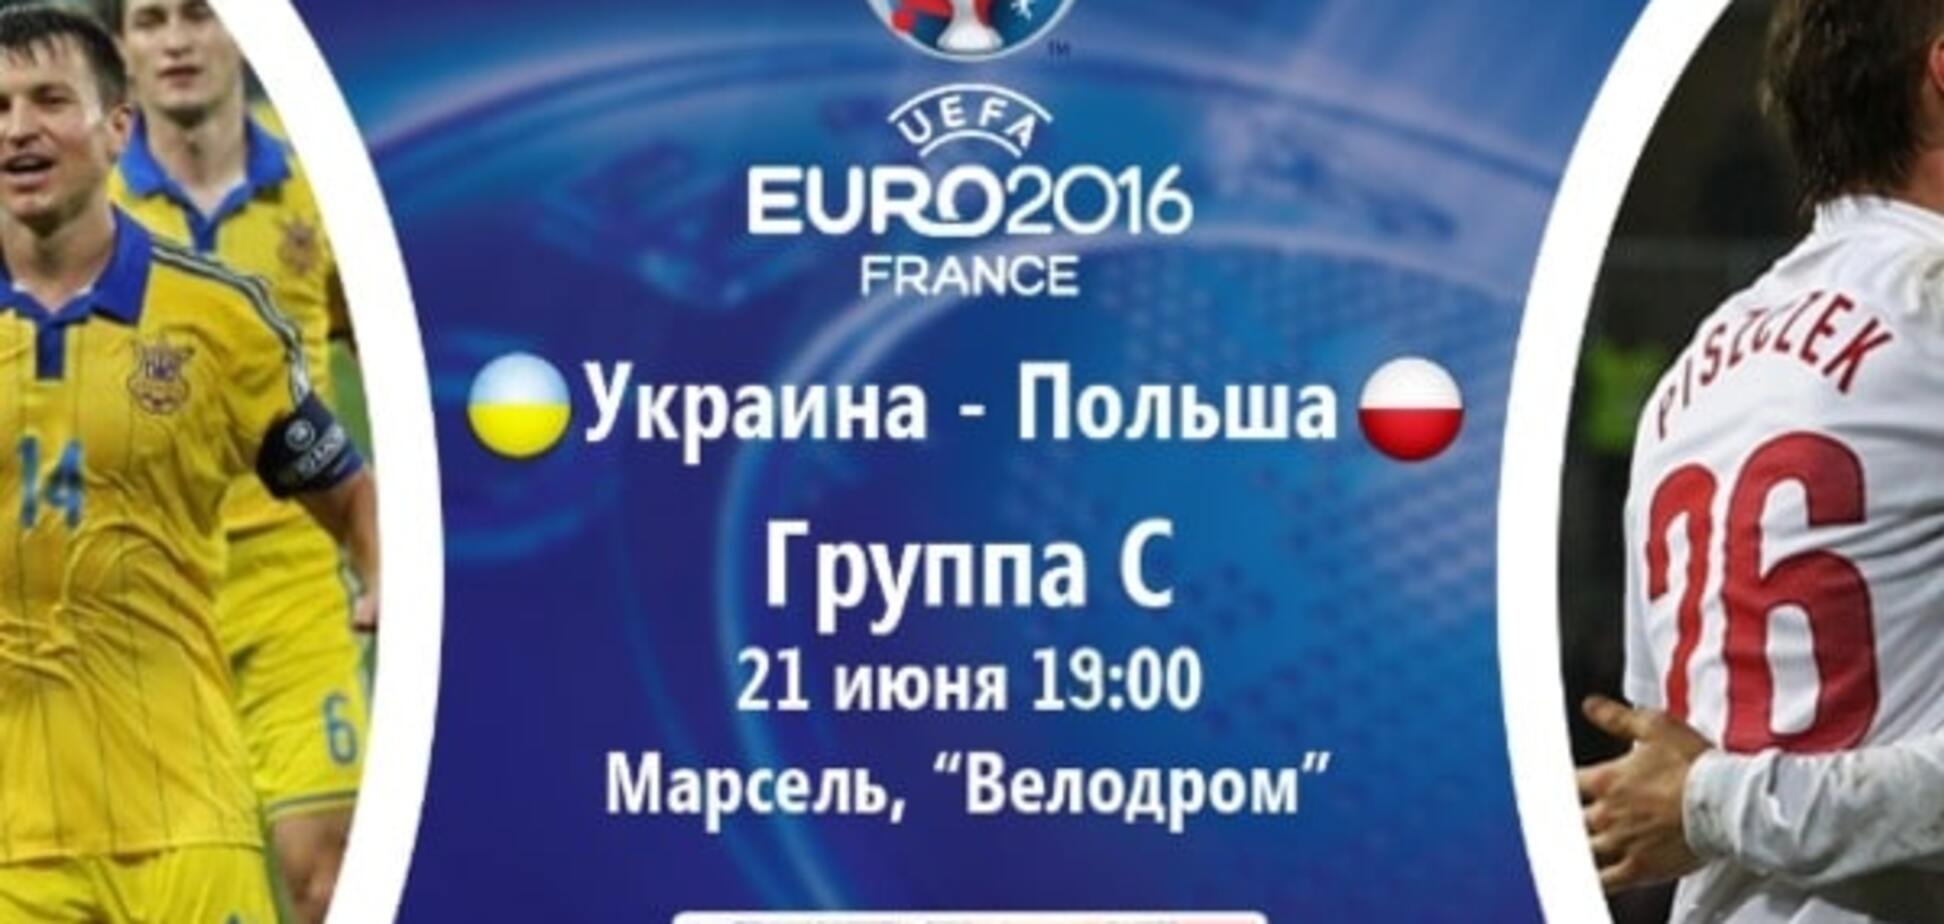 Украина - Польша Евро2016 анонс